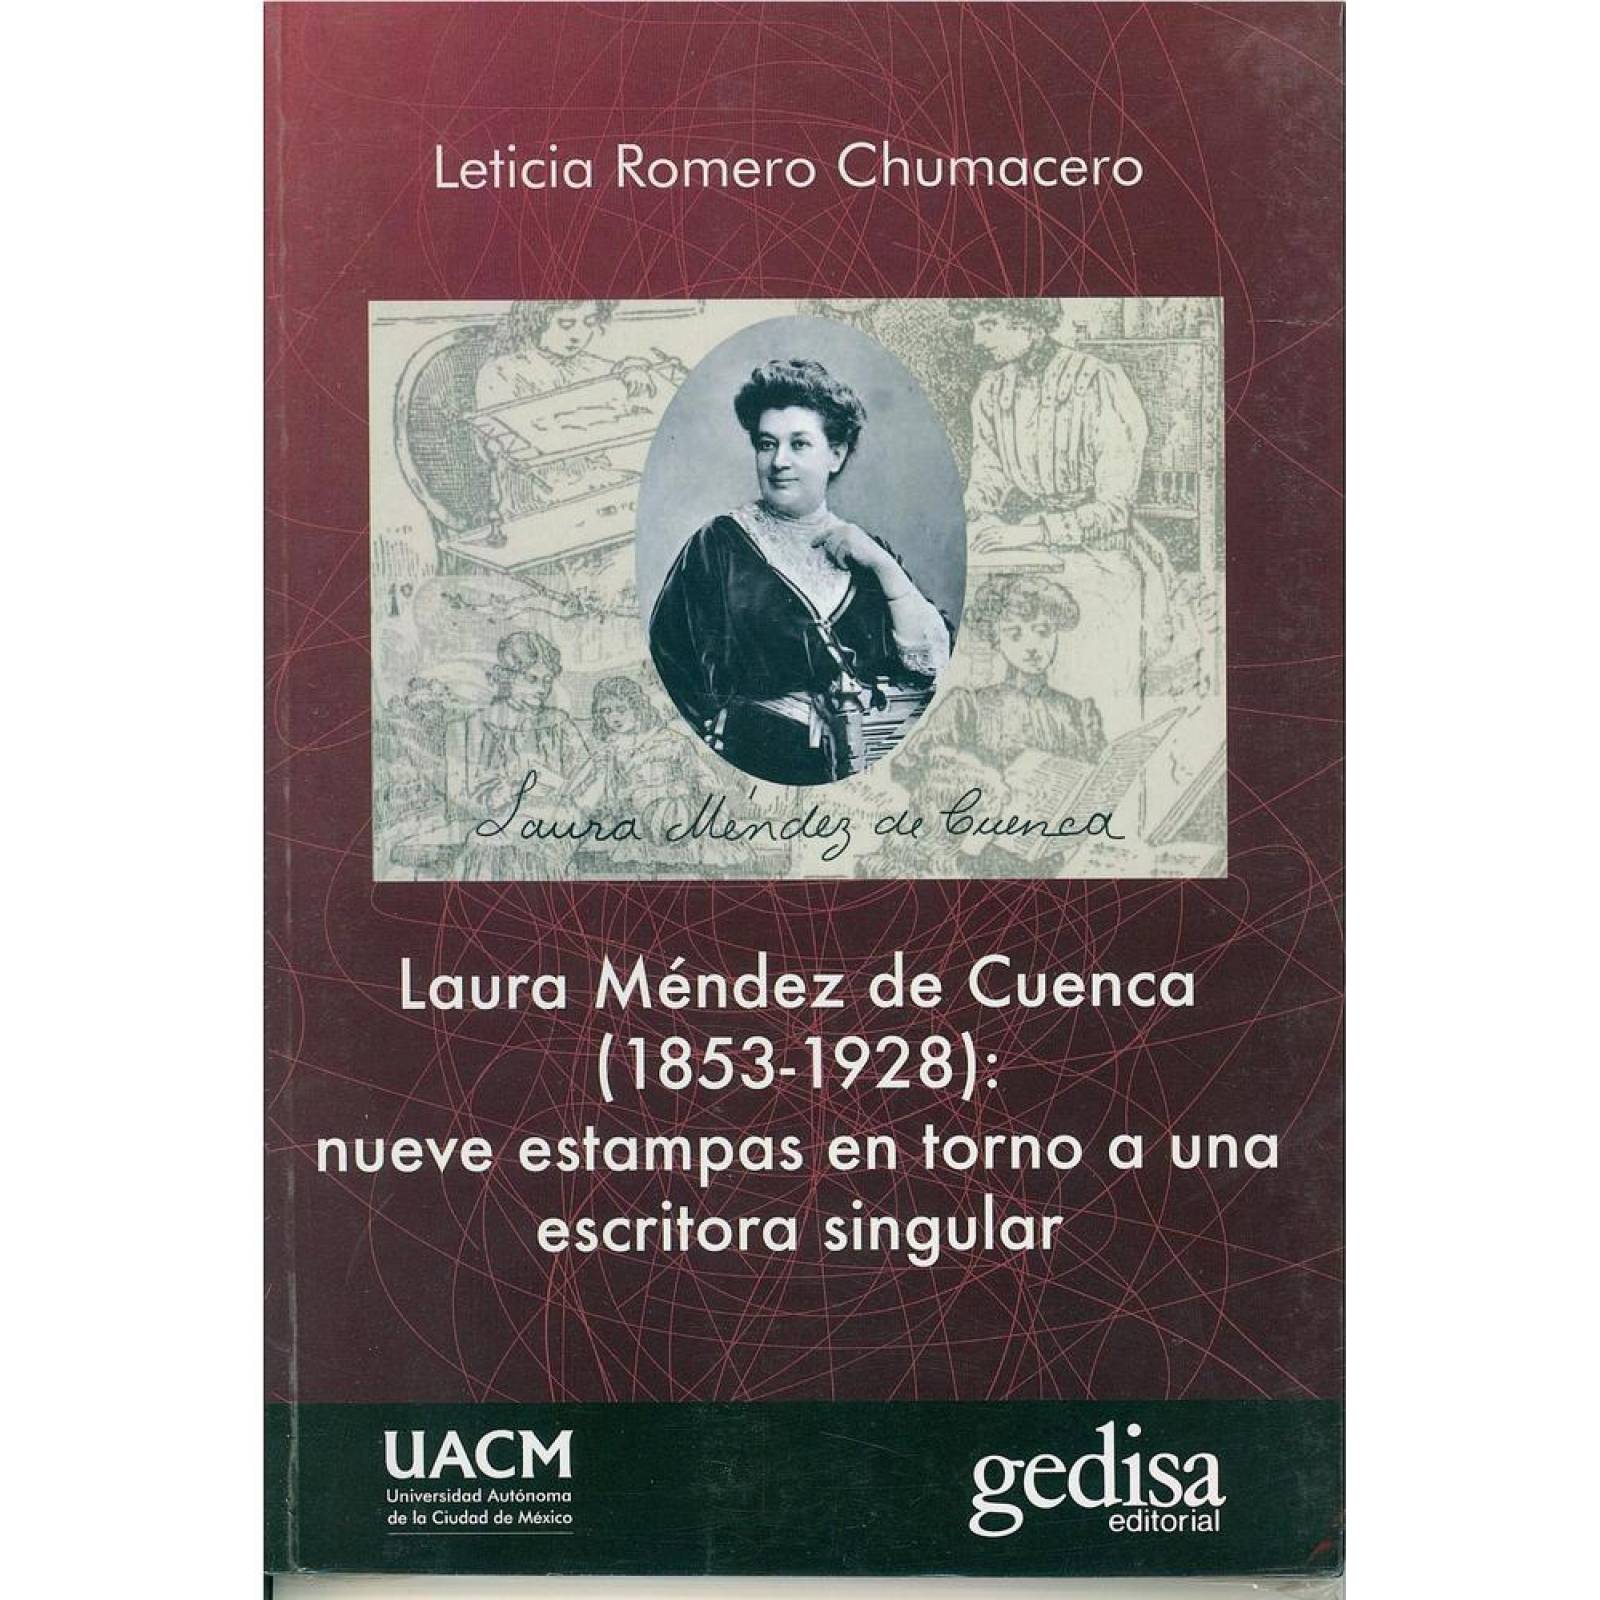 Laura Méndez de Cuenca (1853-1928) 